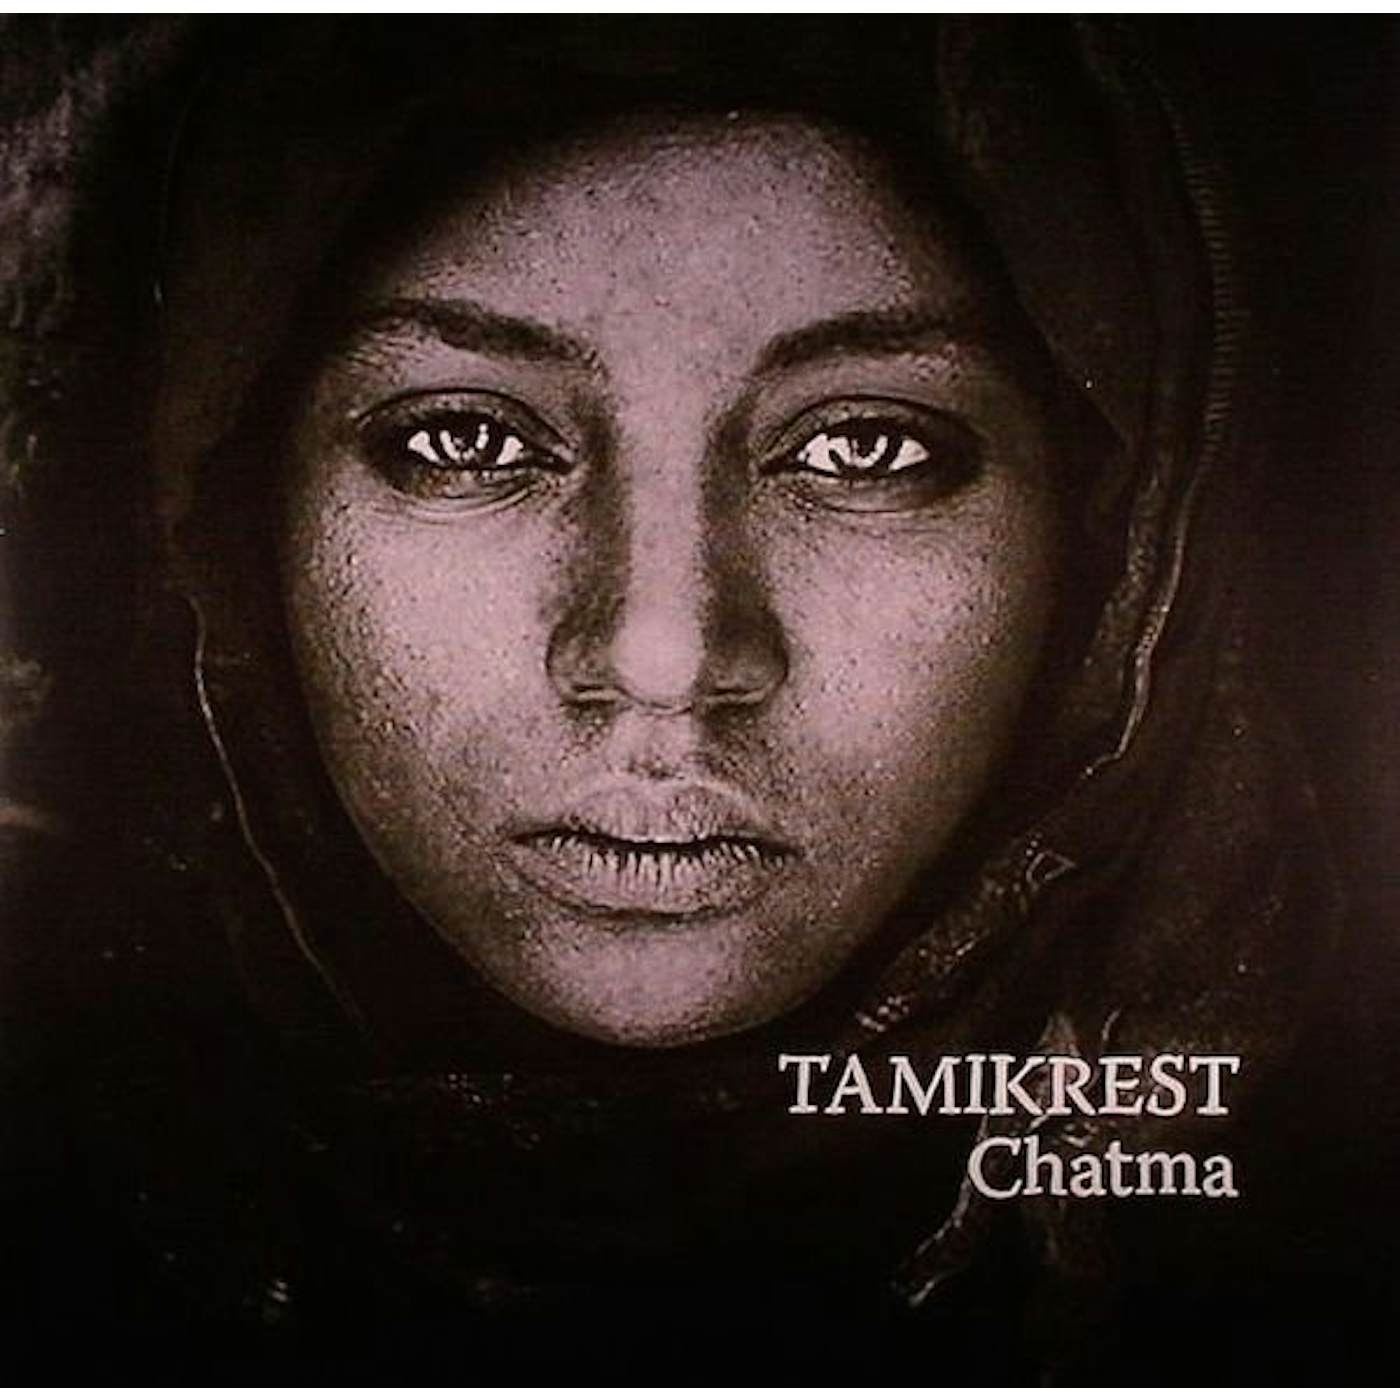 Tamikrest Chatma Vinyl Record